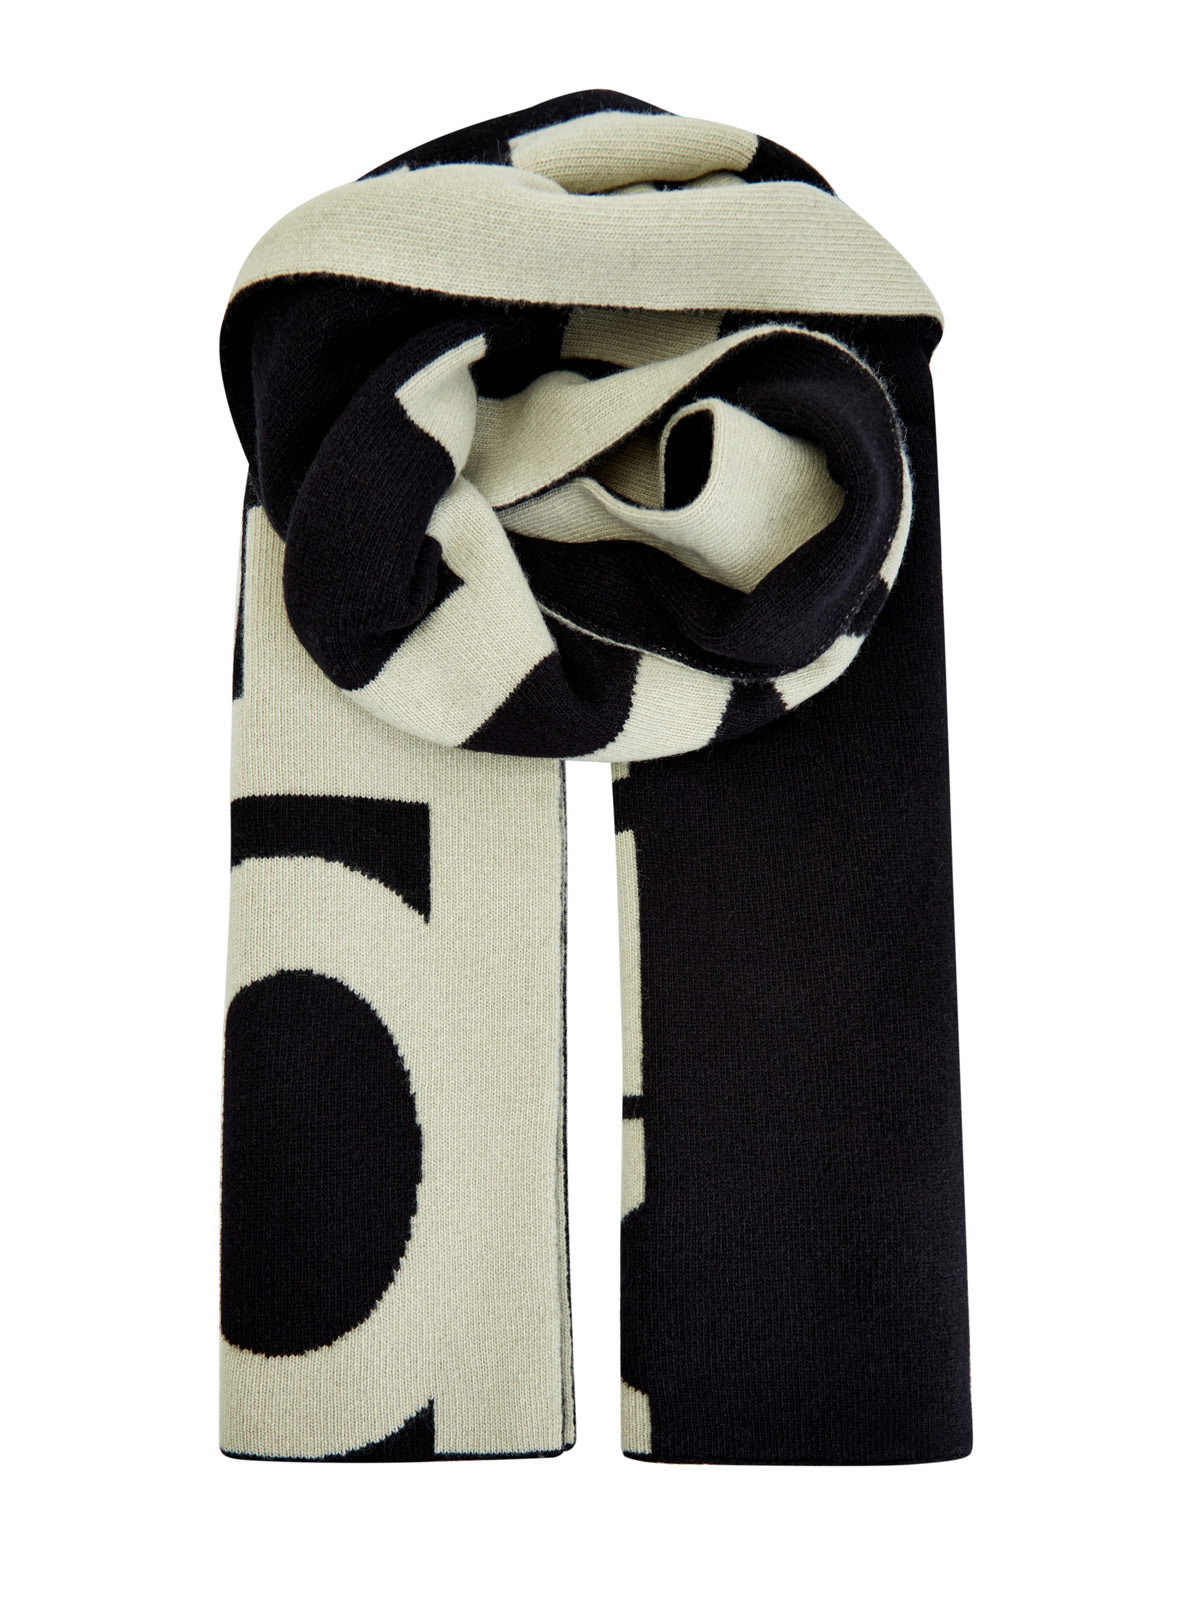 Шерстяной шарф с макро-принтом в технике интарсии OFF-WHITE, цвет черно-белый, размер 36;36.5;37.5;38;38.5;39;40 - фото 1